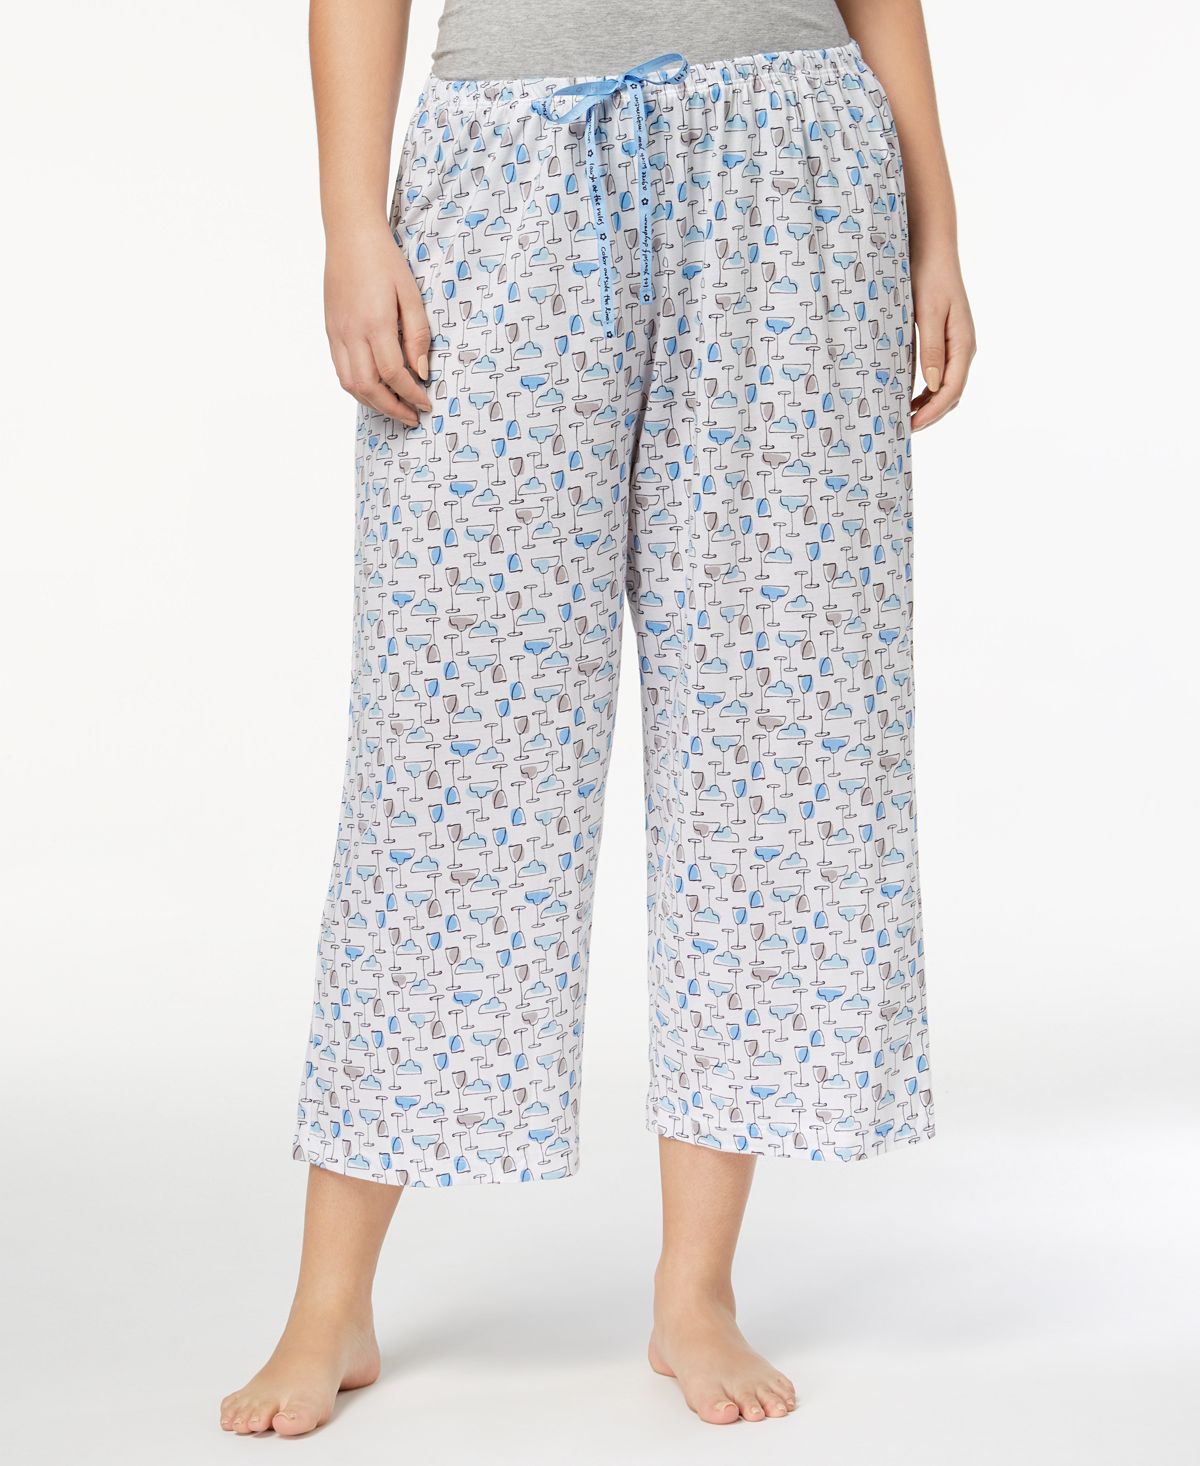 Женские трикотажные пижамные брюки-капри больших размеров с принтом Sleepwell, изготовленные с использованием технологии регулирования температуры Hue